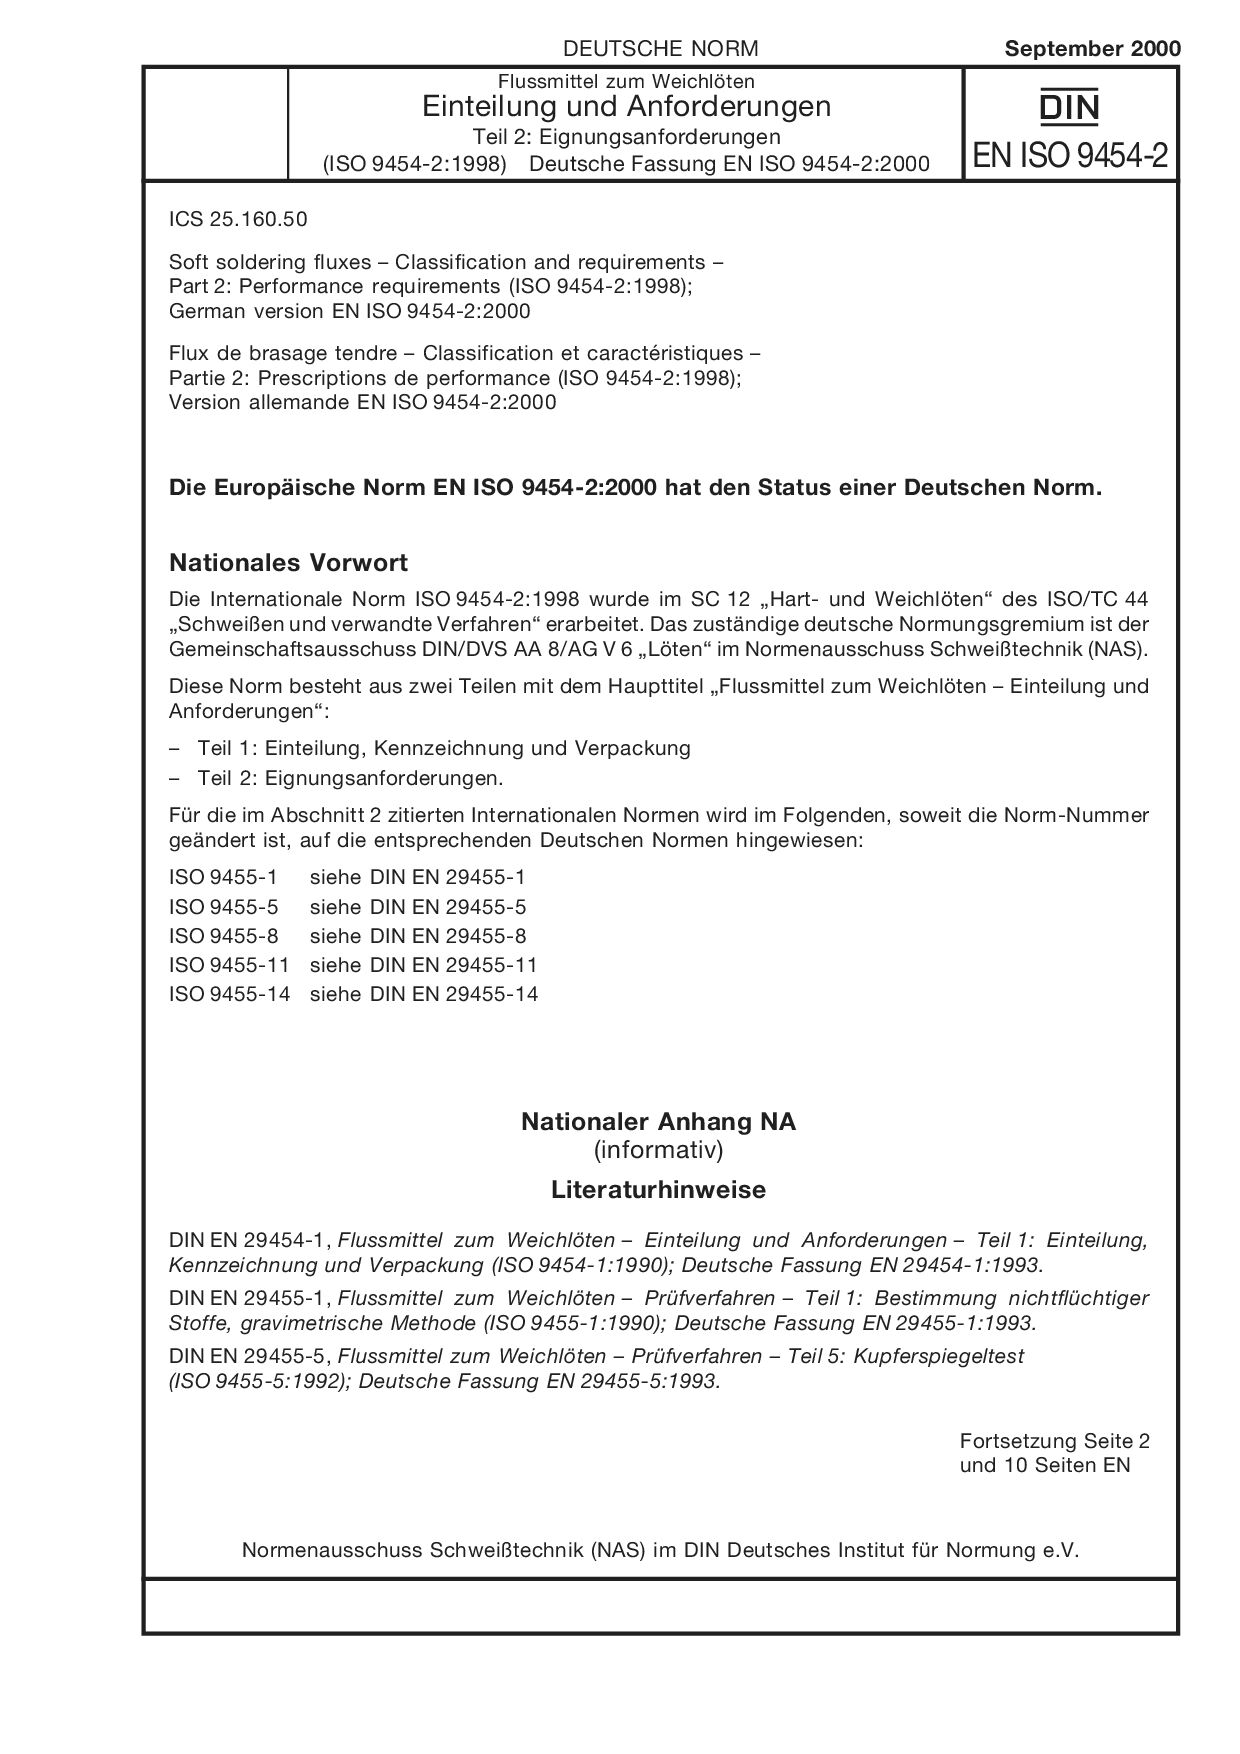 DIN EN ISO 9454-2:2000